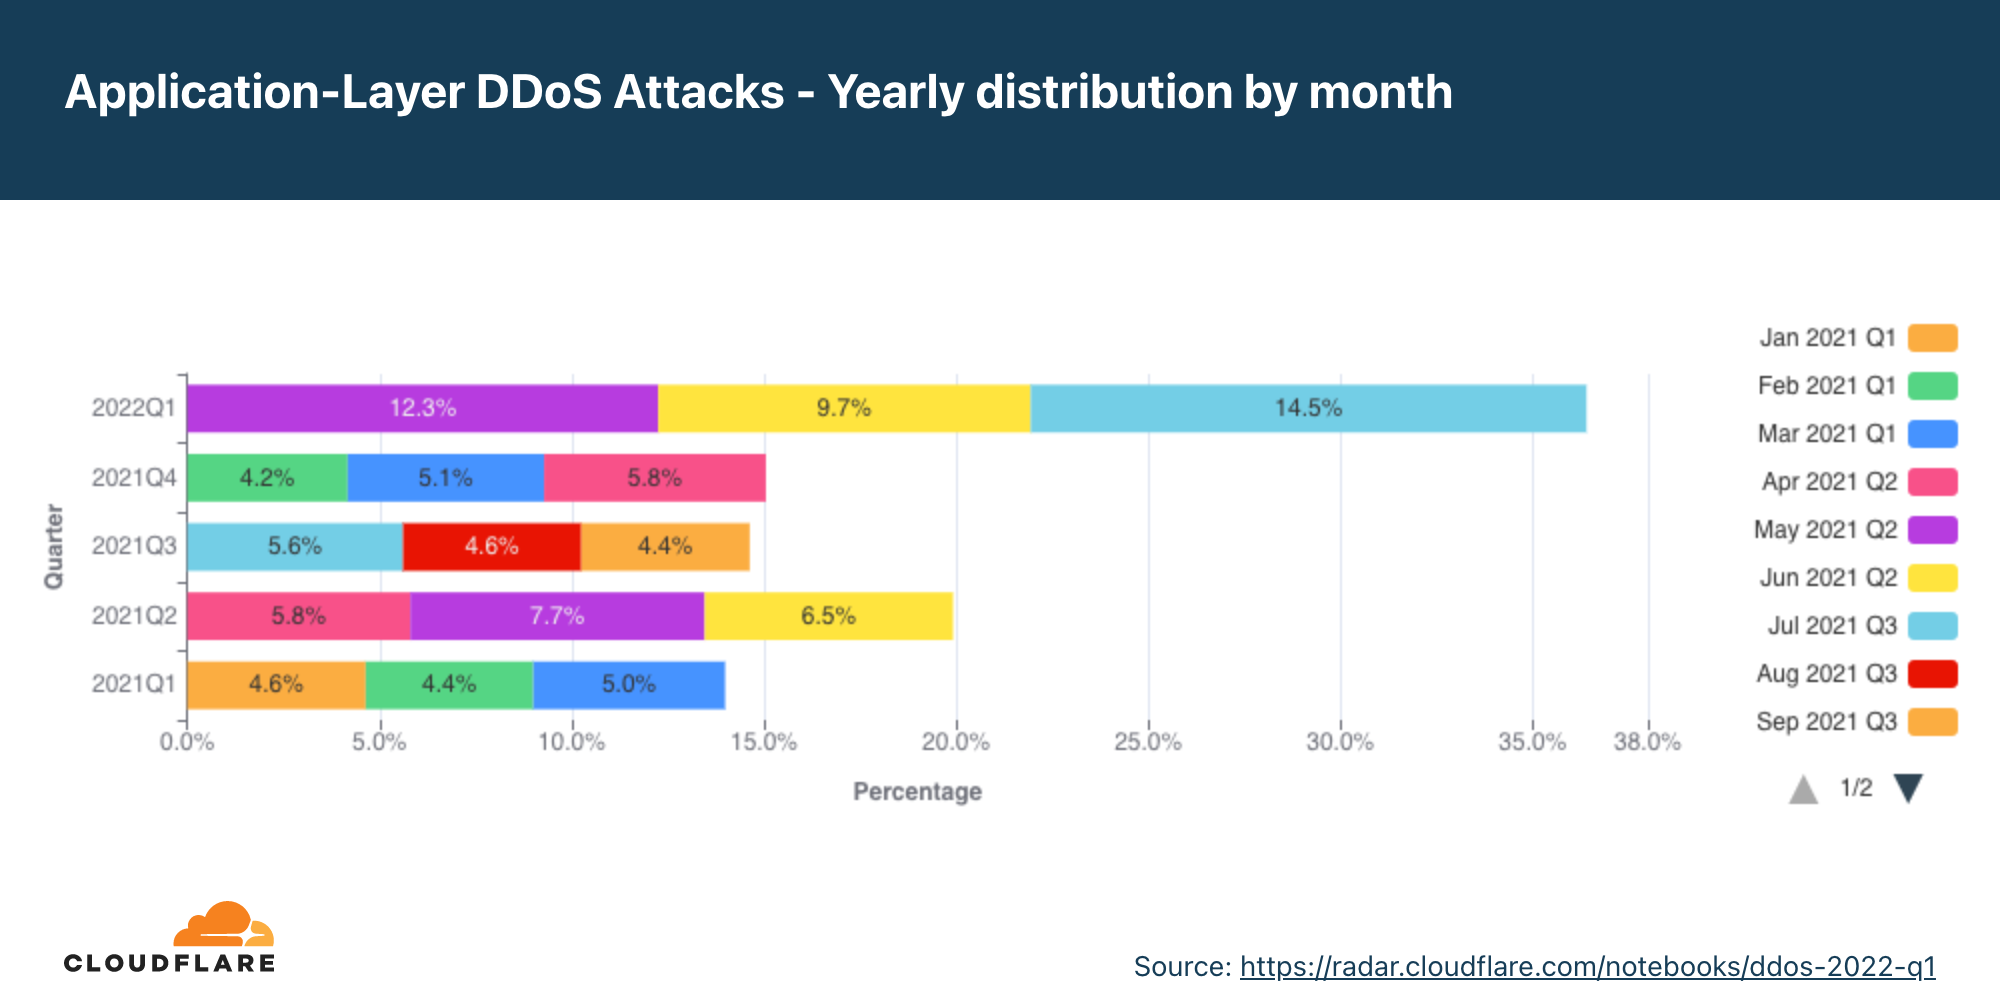 過去 12 個月按月份劃分的應用程式層 DDoS 攻擊年度分佈圖表